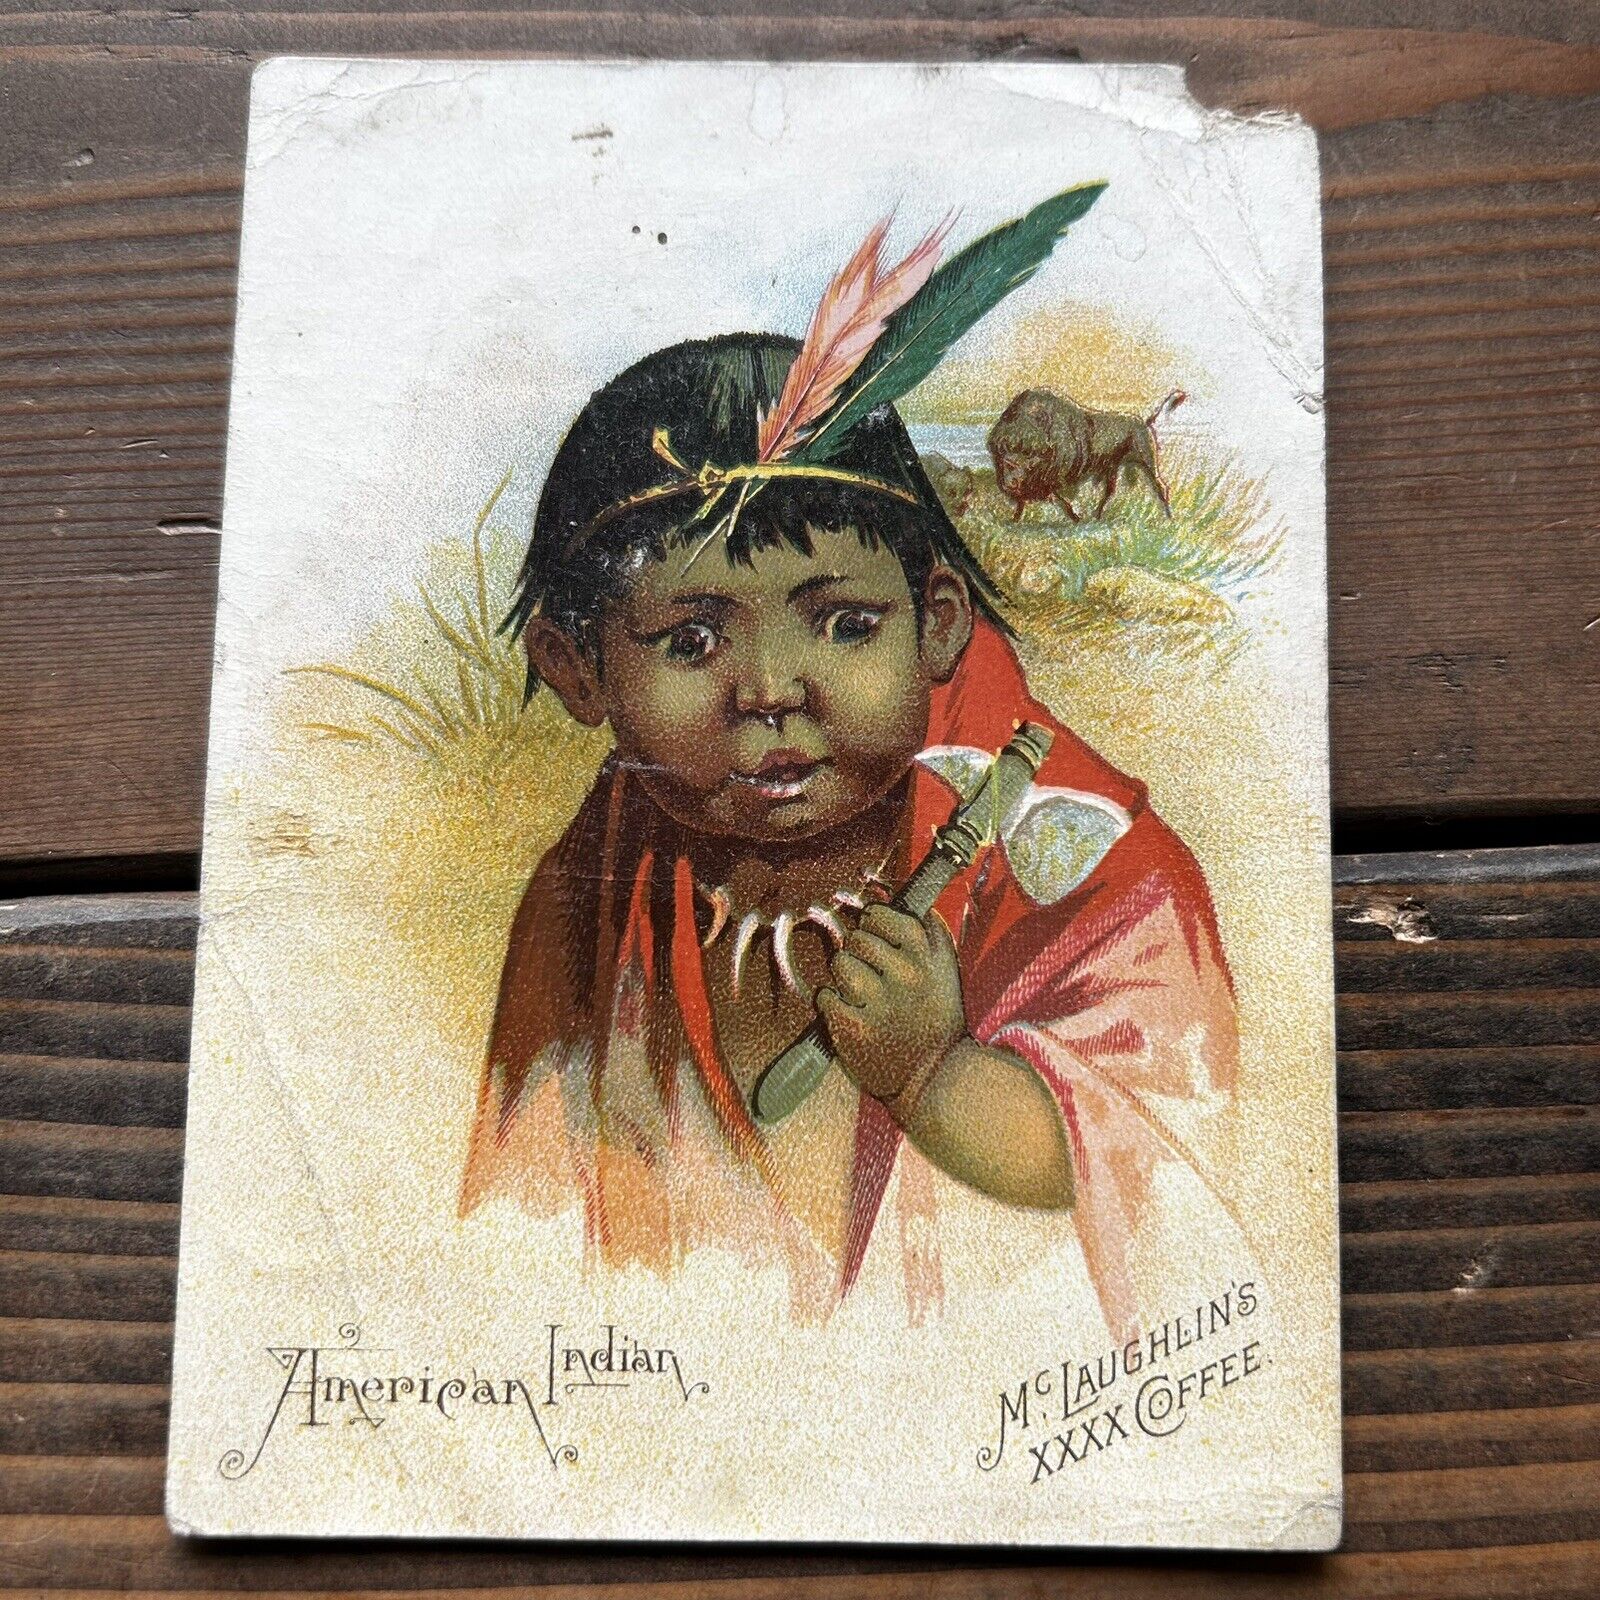 1889 McLaughlin\'s XXXX Coffee Trade Card - American Indian Ephemera